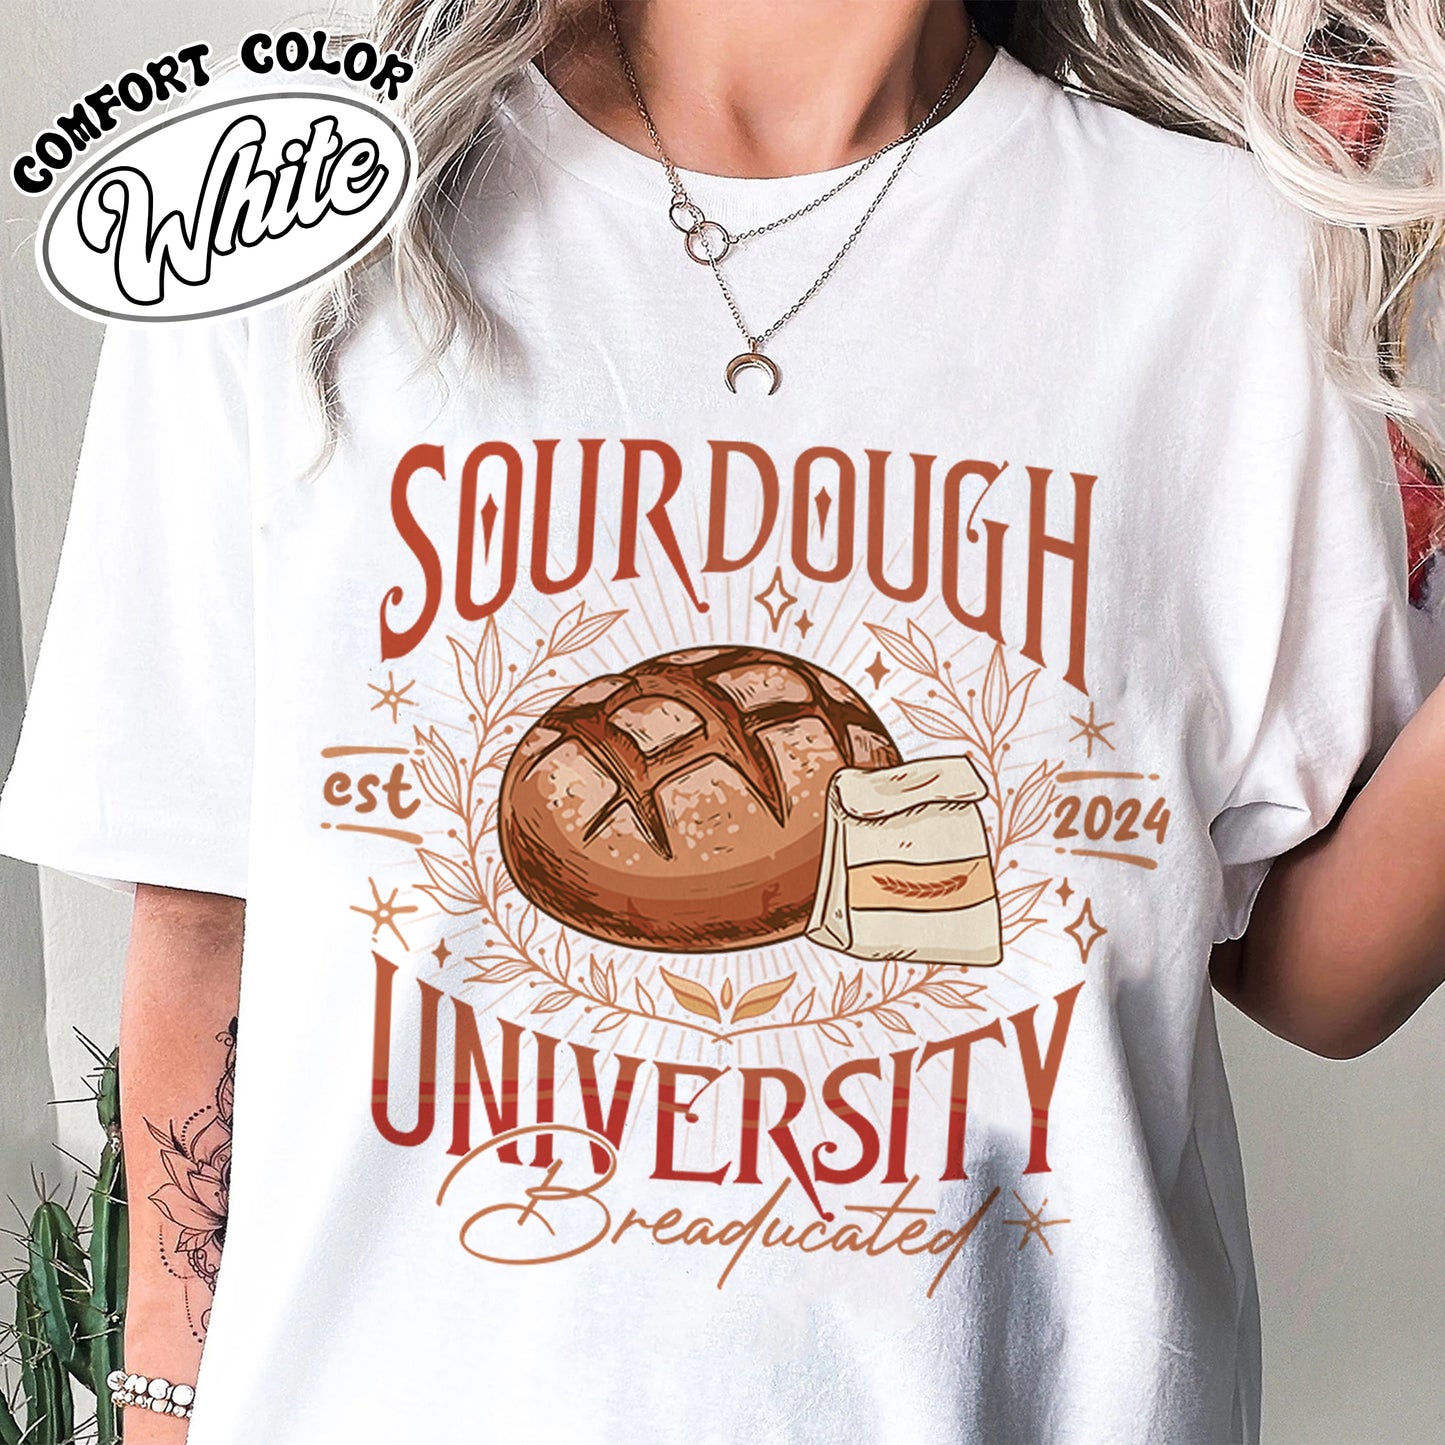 Sourdough University Comfort Color Shirt, Sourdough University Shirt, In My Sourdough Era, Sourdough Shirt Funny, Sourdough Shirt, Sourdough Gift